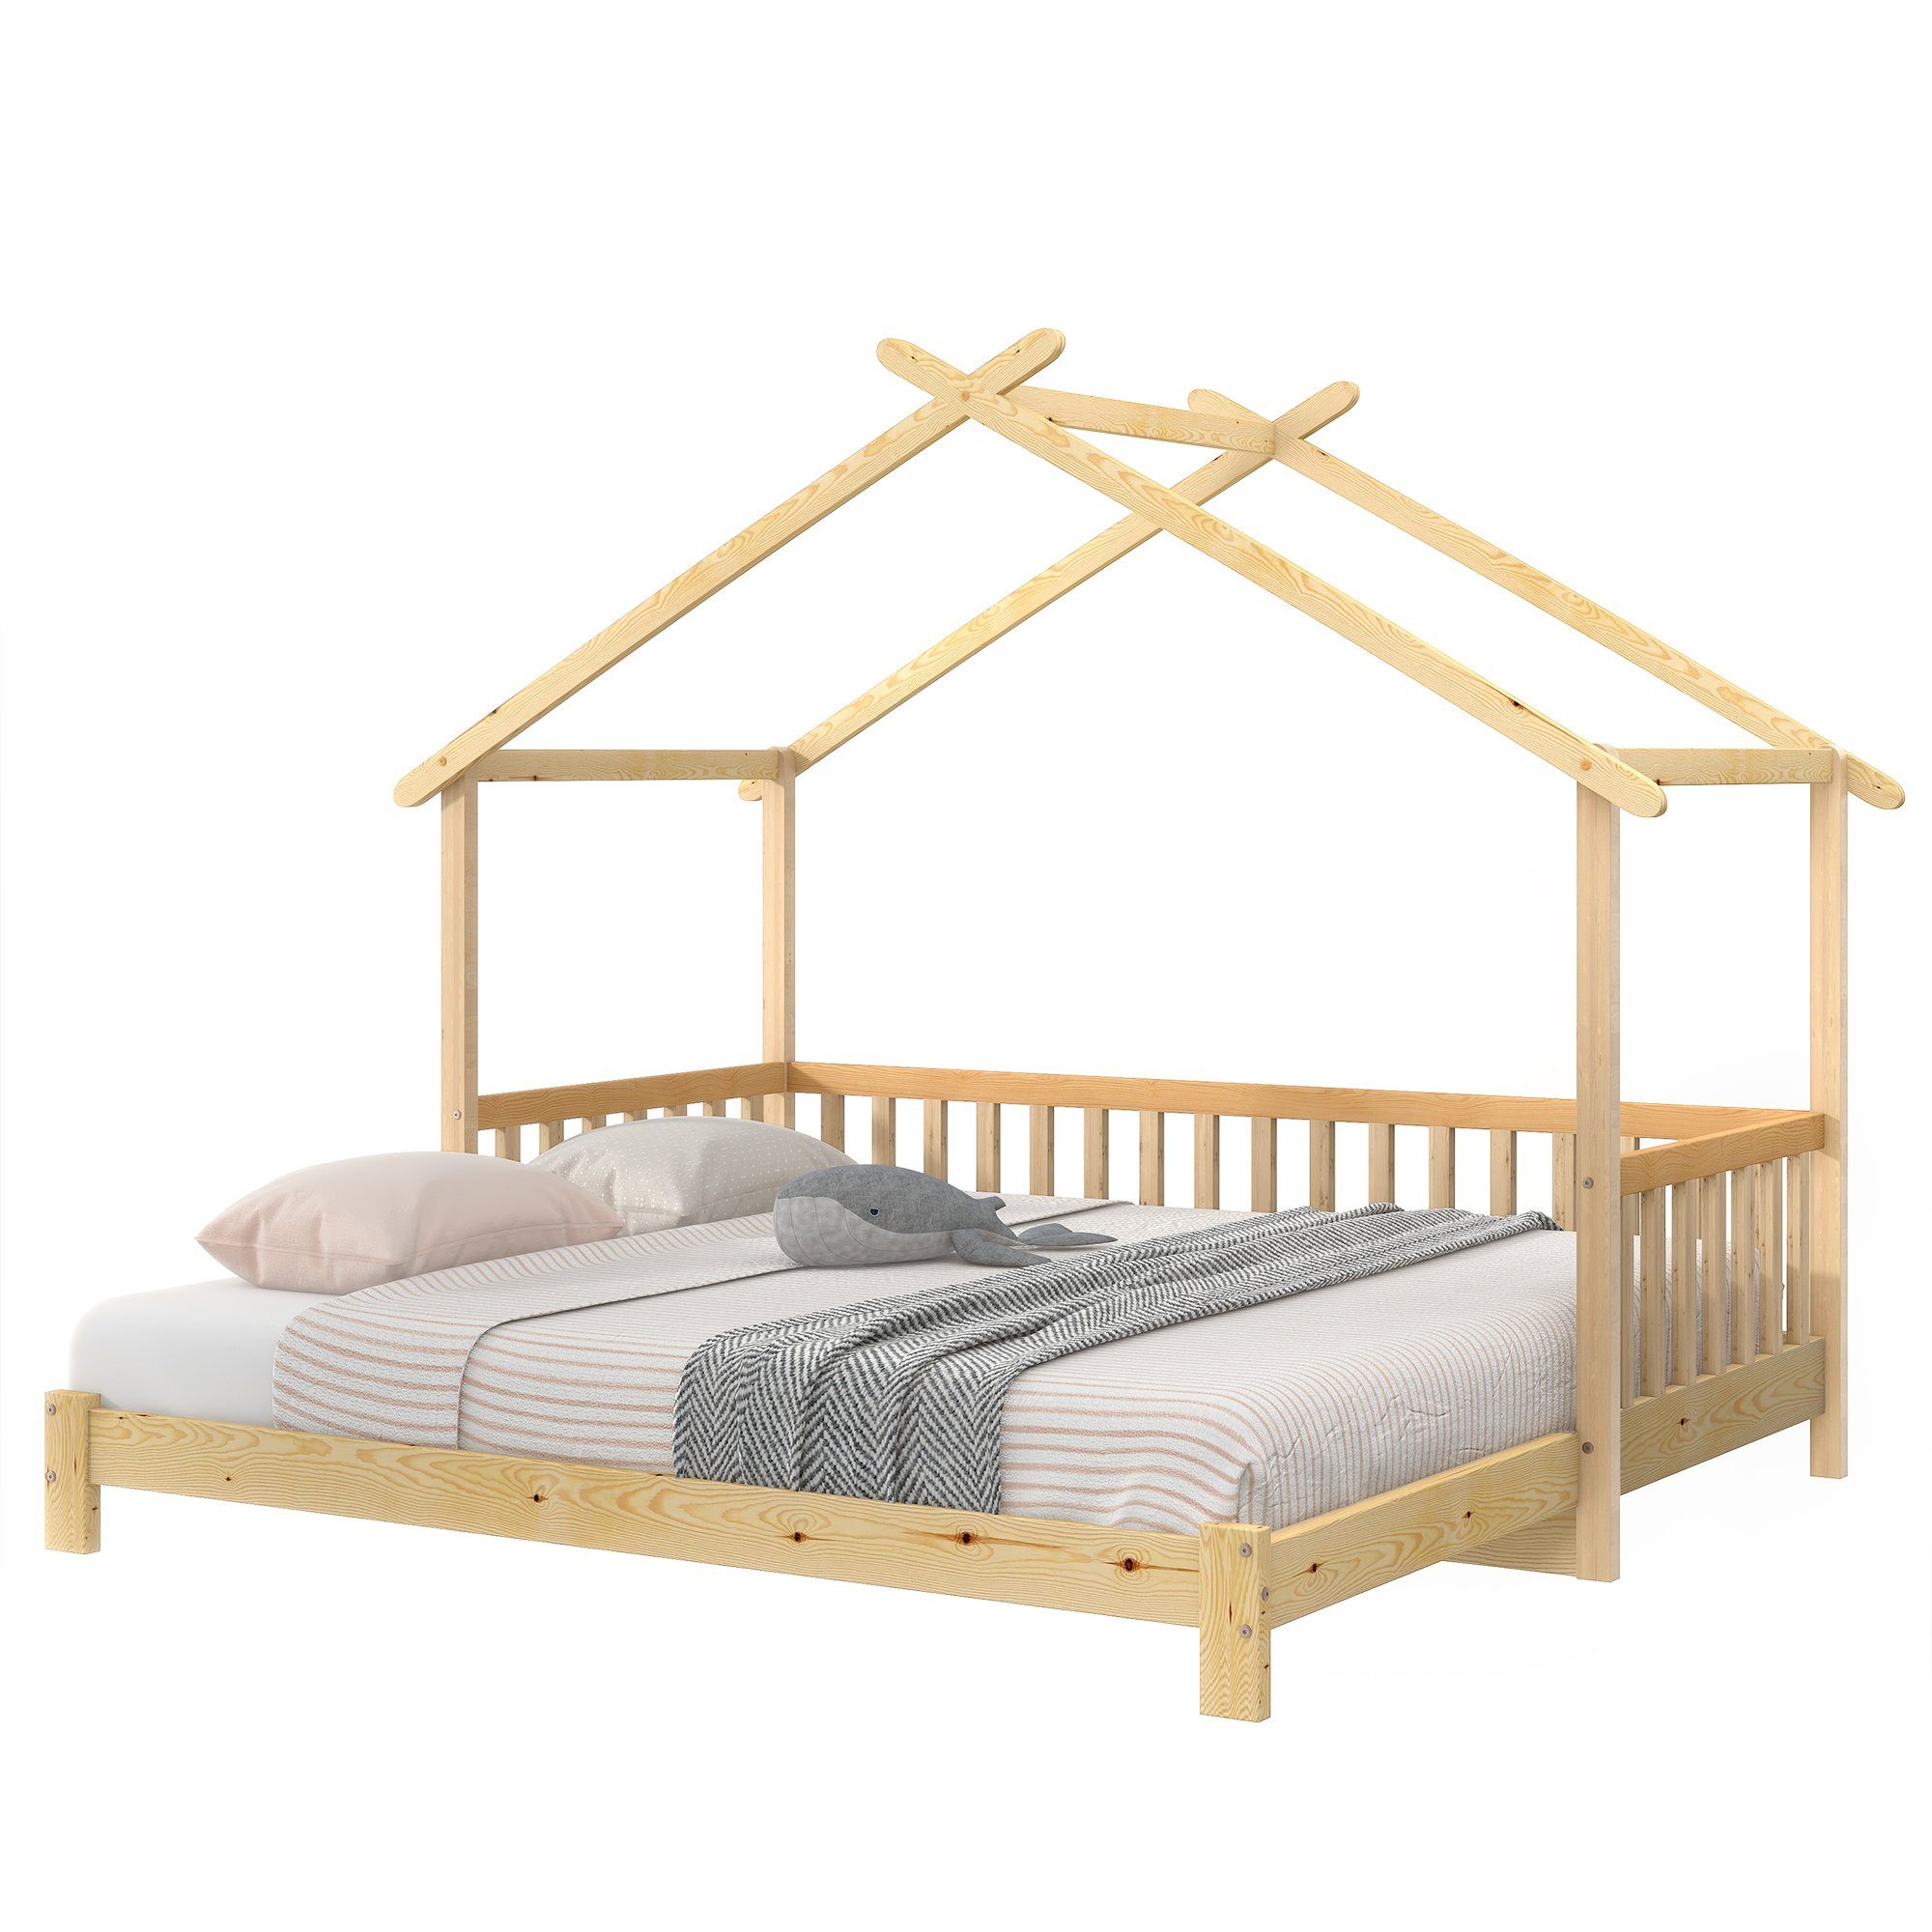 HAUSS SPLOE Bett Hausbett Kinderbett Baumhausbett keine enthält Holzbett (Das Erweiterbares Matratze), Matratze Bettrahmen Bett Ohne